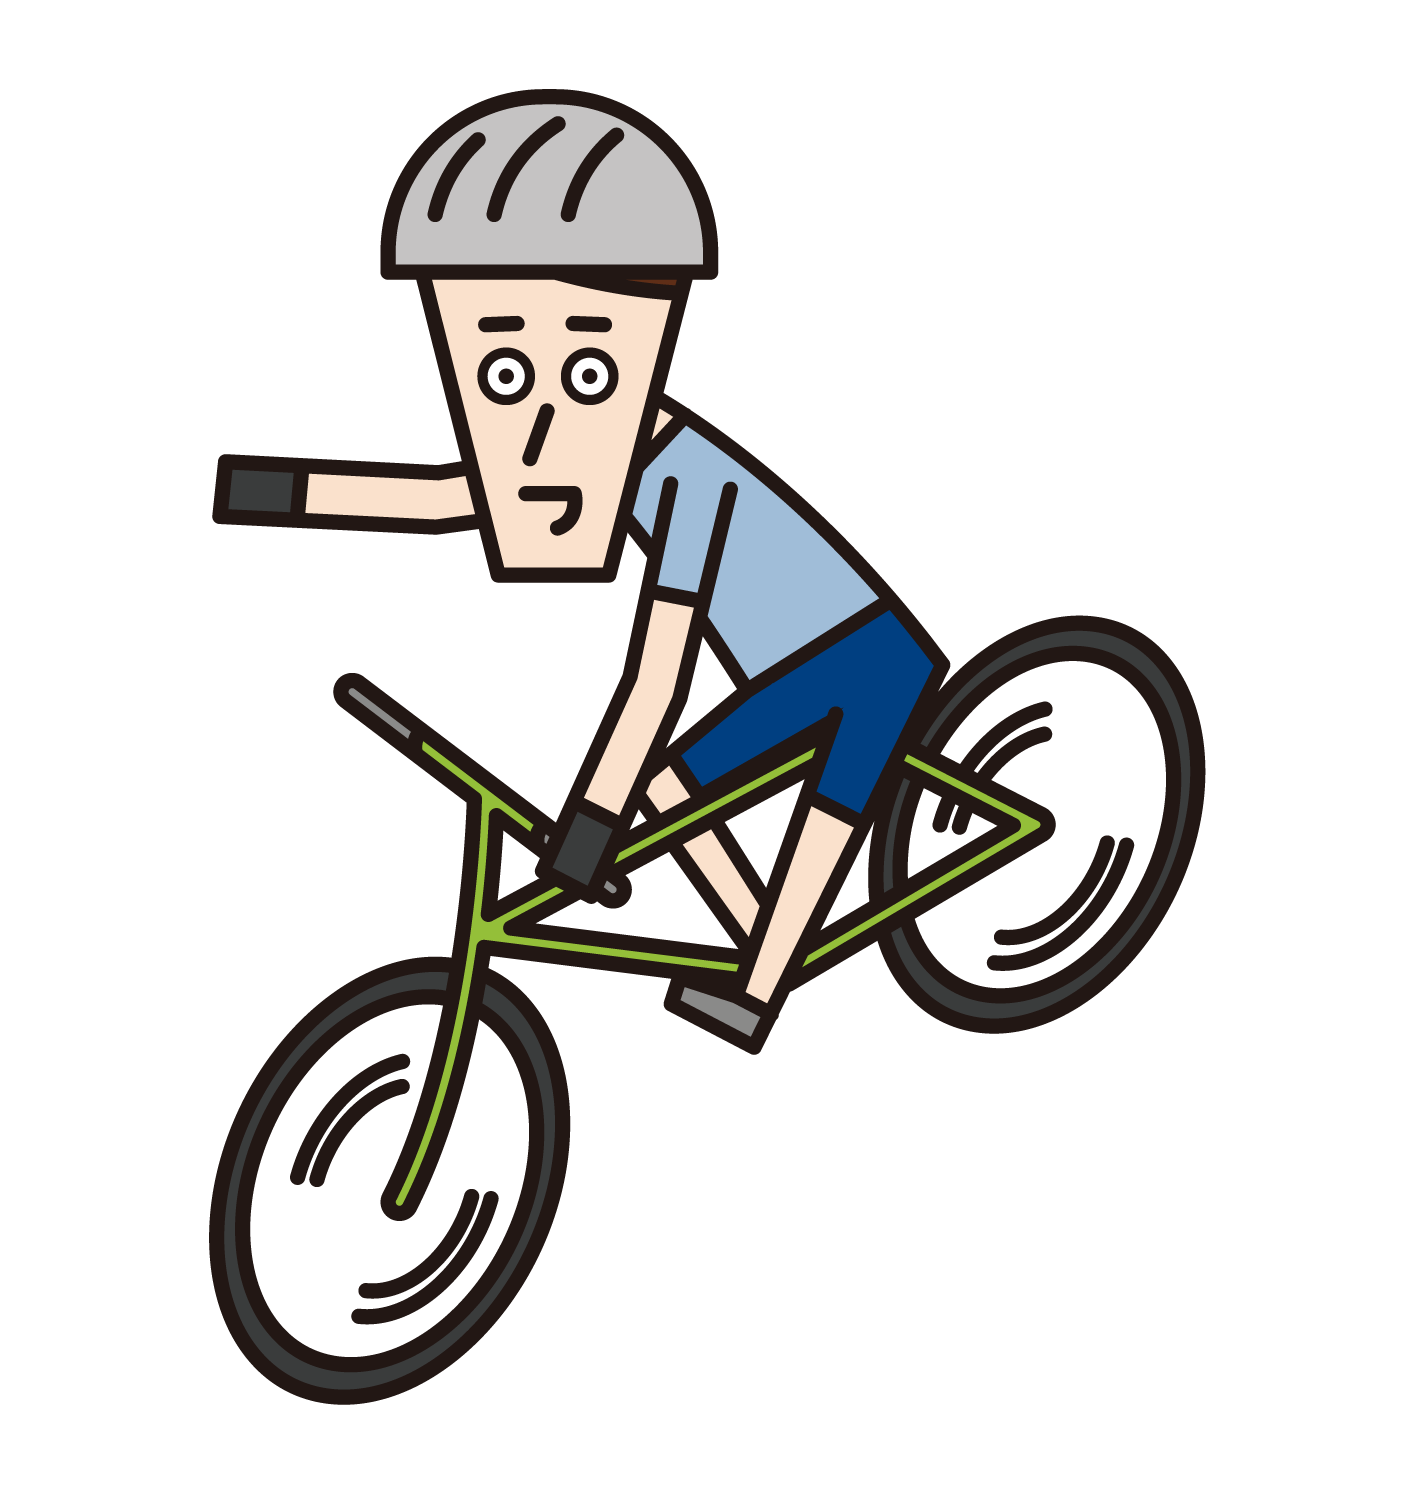 핸드 시그널(손 표지판)이 있는 자전거 타기(여성)의 일러스트